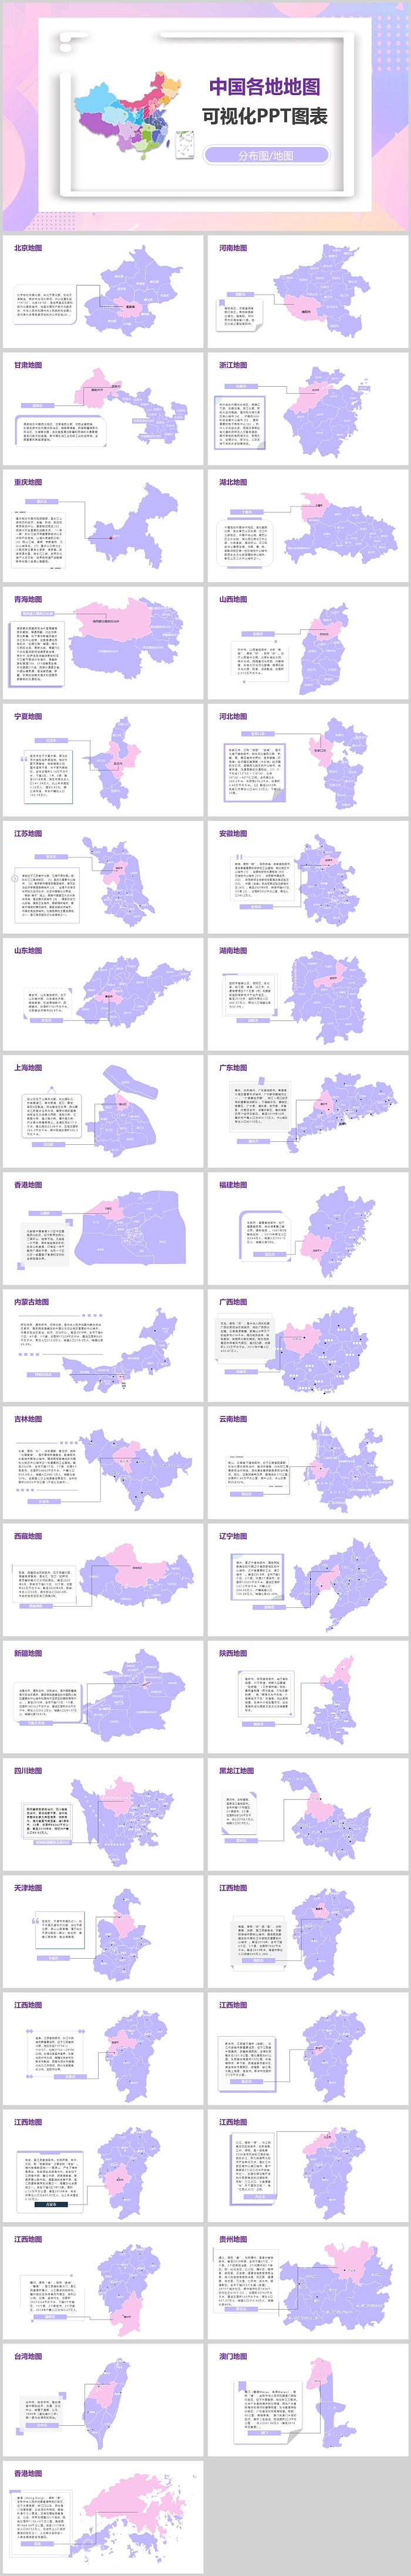 精美创意中国各地地图可视化PPT图表